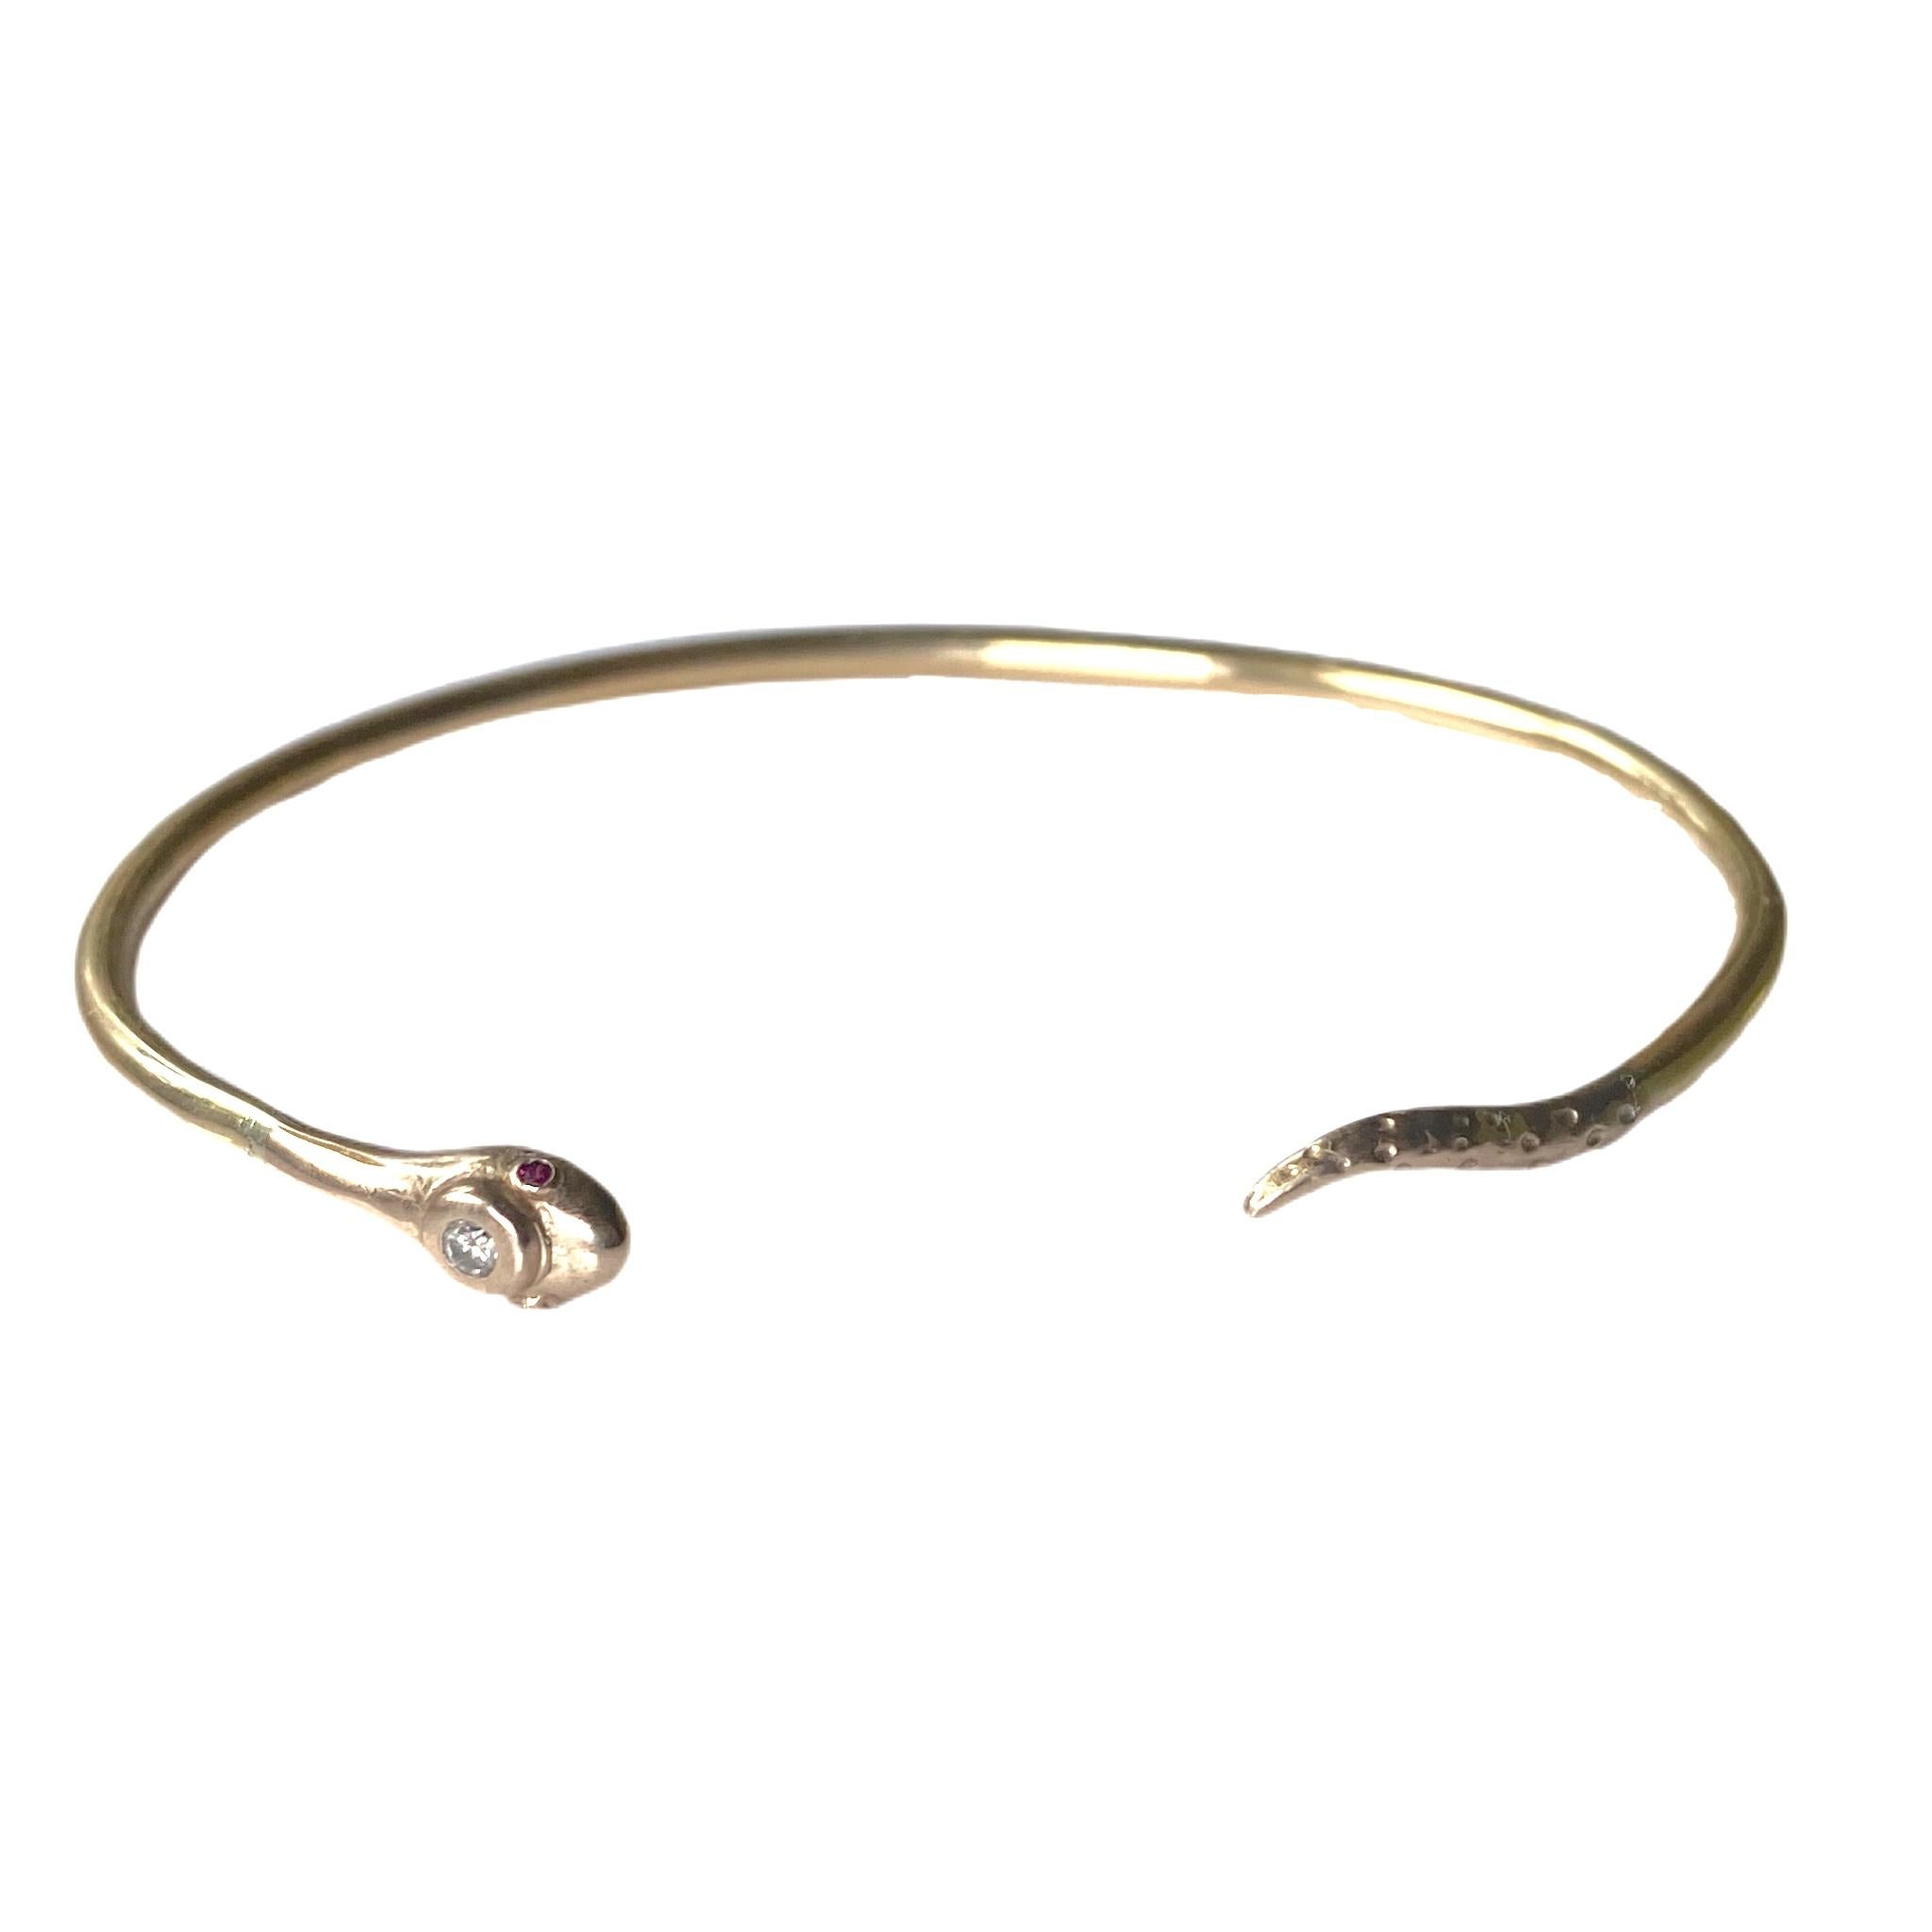 Bracelet manchette en bronze J DAUPHIN avec diamant blanc, rubis et serpent.

Fabriqué à la main à Los Angeles
Fabriqué sur commande, 3 semaines pour être achevé